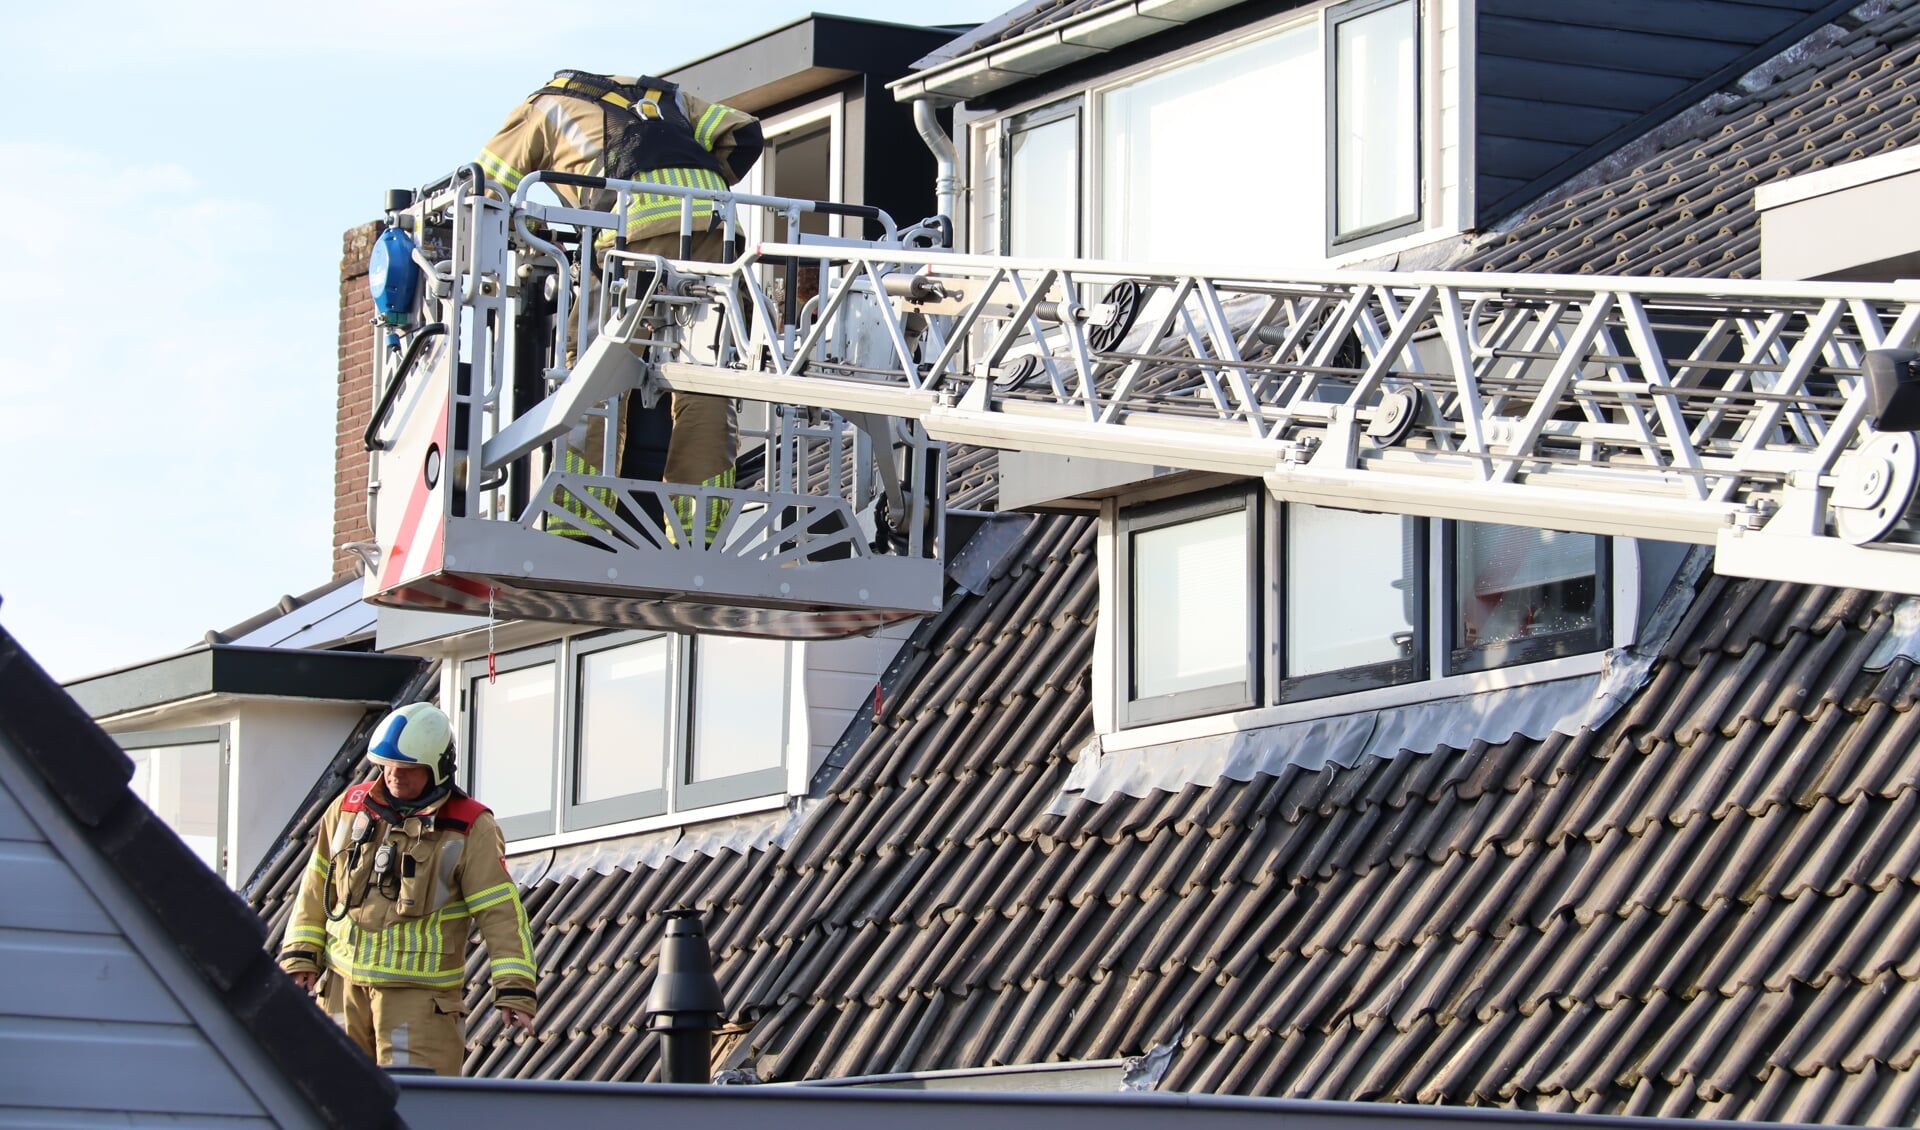 • Brandweerlieden gebruikten de ladderwagen om de brand te kunnen blussen.